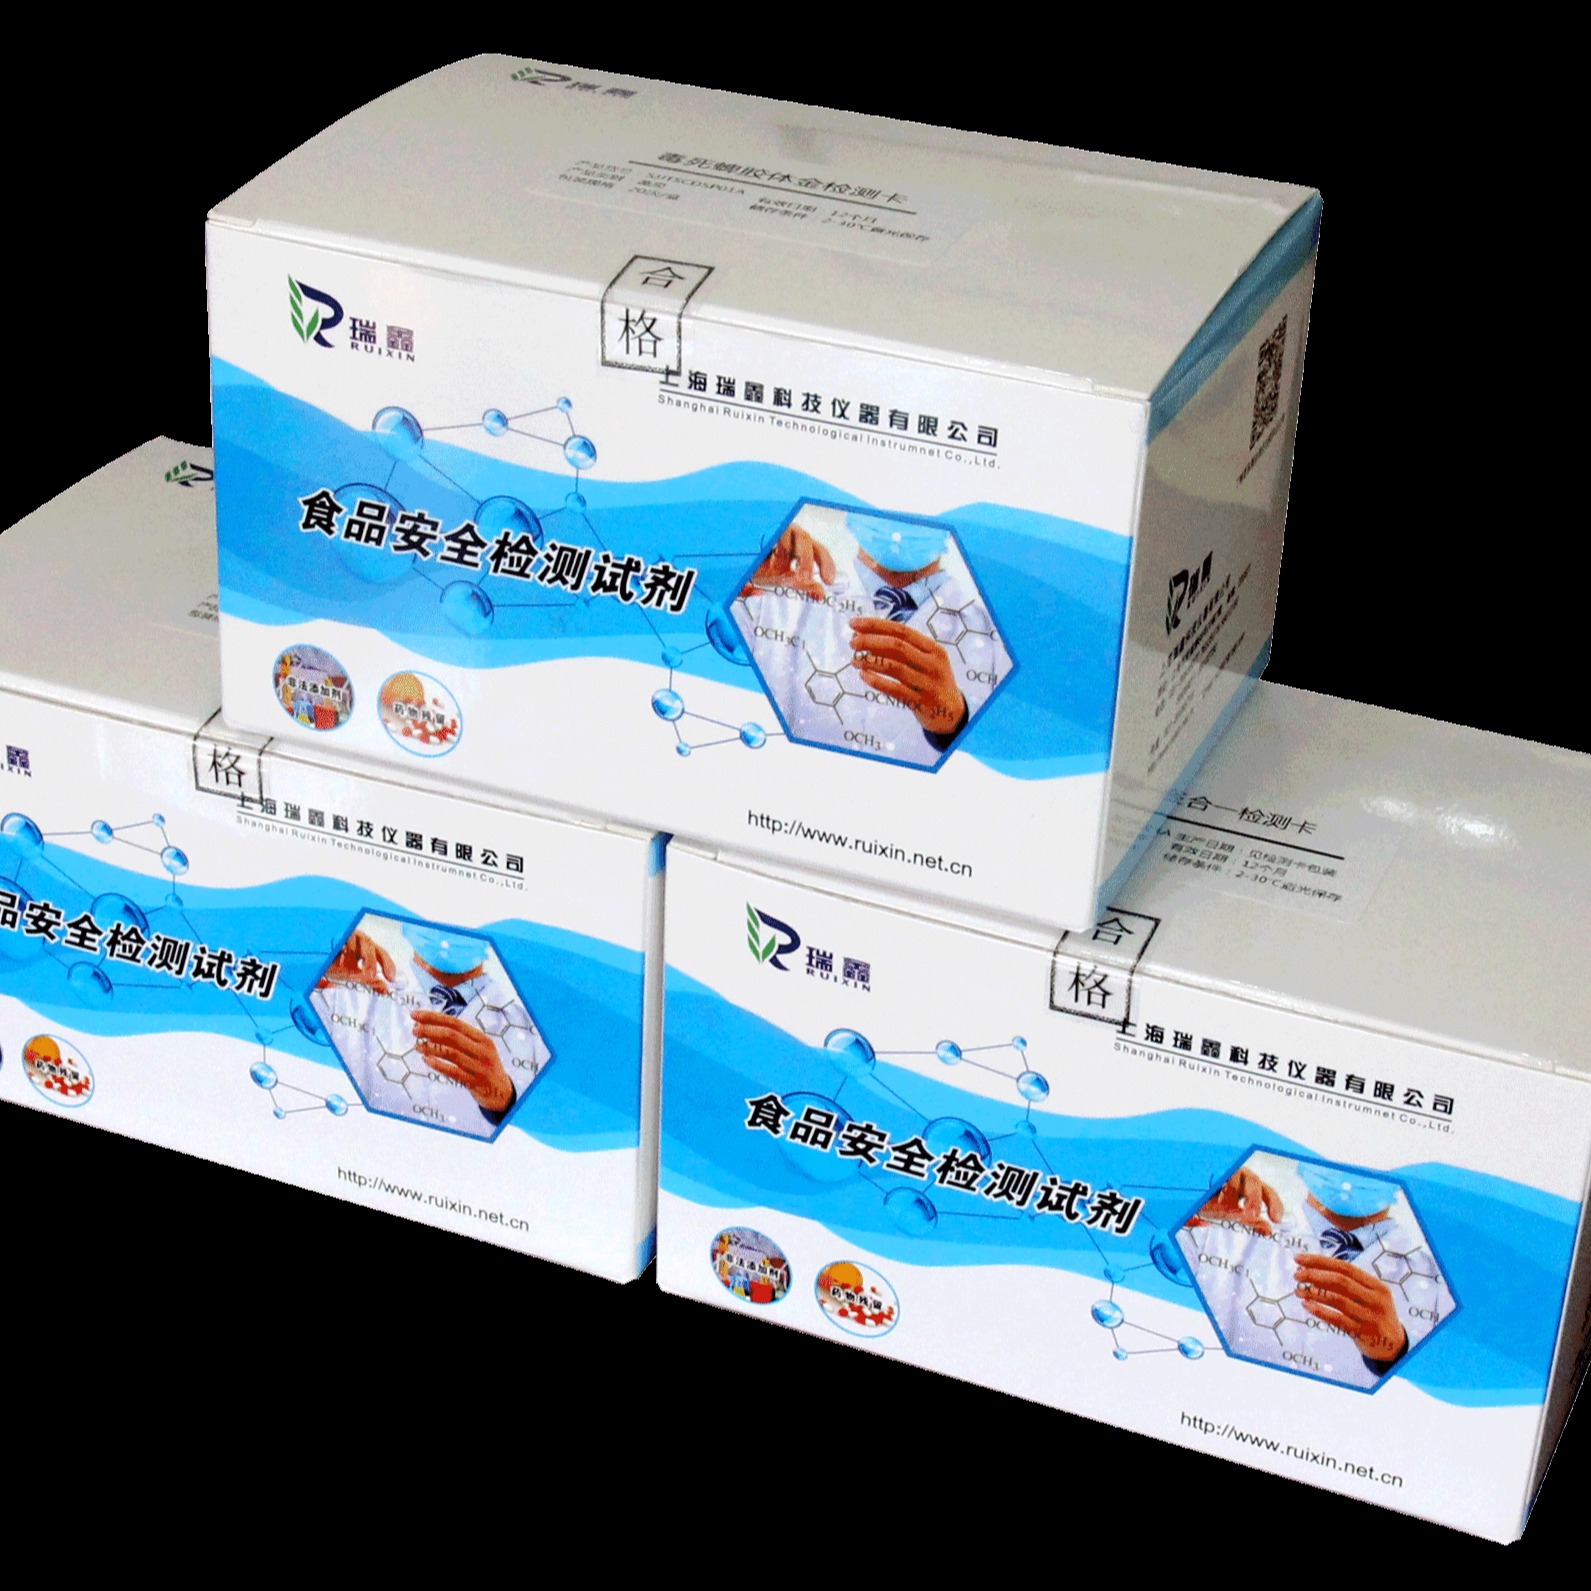 上海瑞鑫 厂家直销 木耳掺假检测试剂  木耳检测试剂盒 木耳镁盐硫酸盐检测